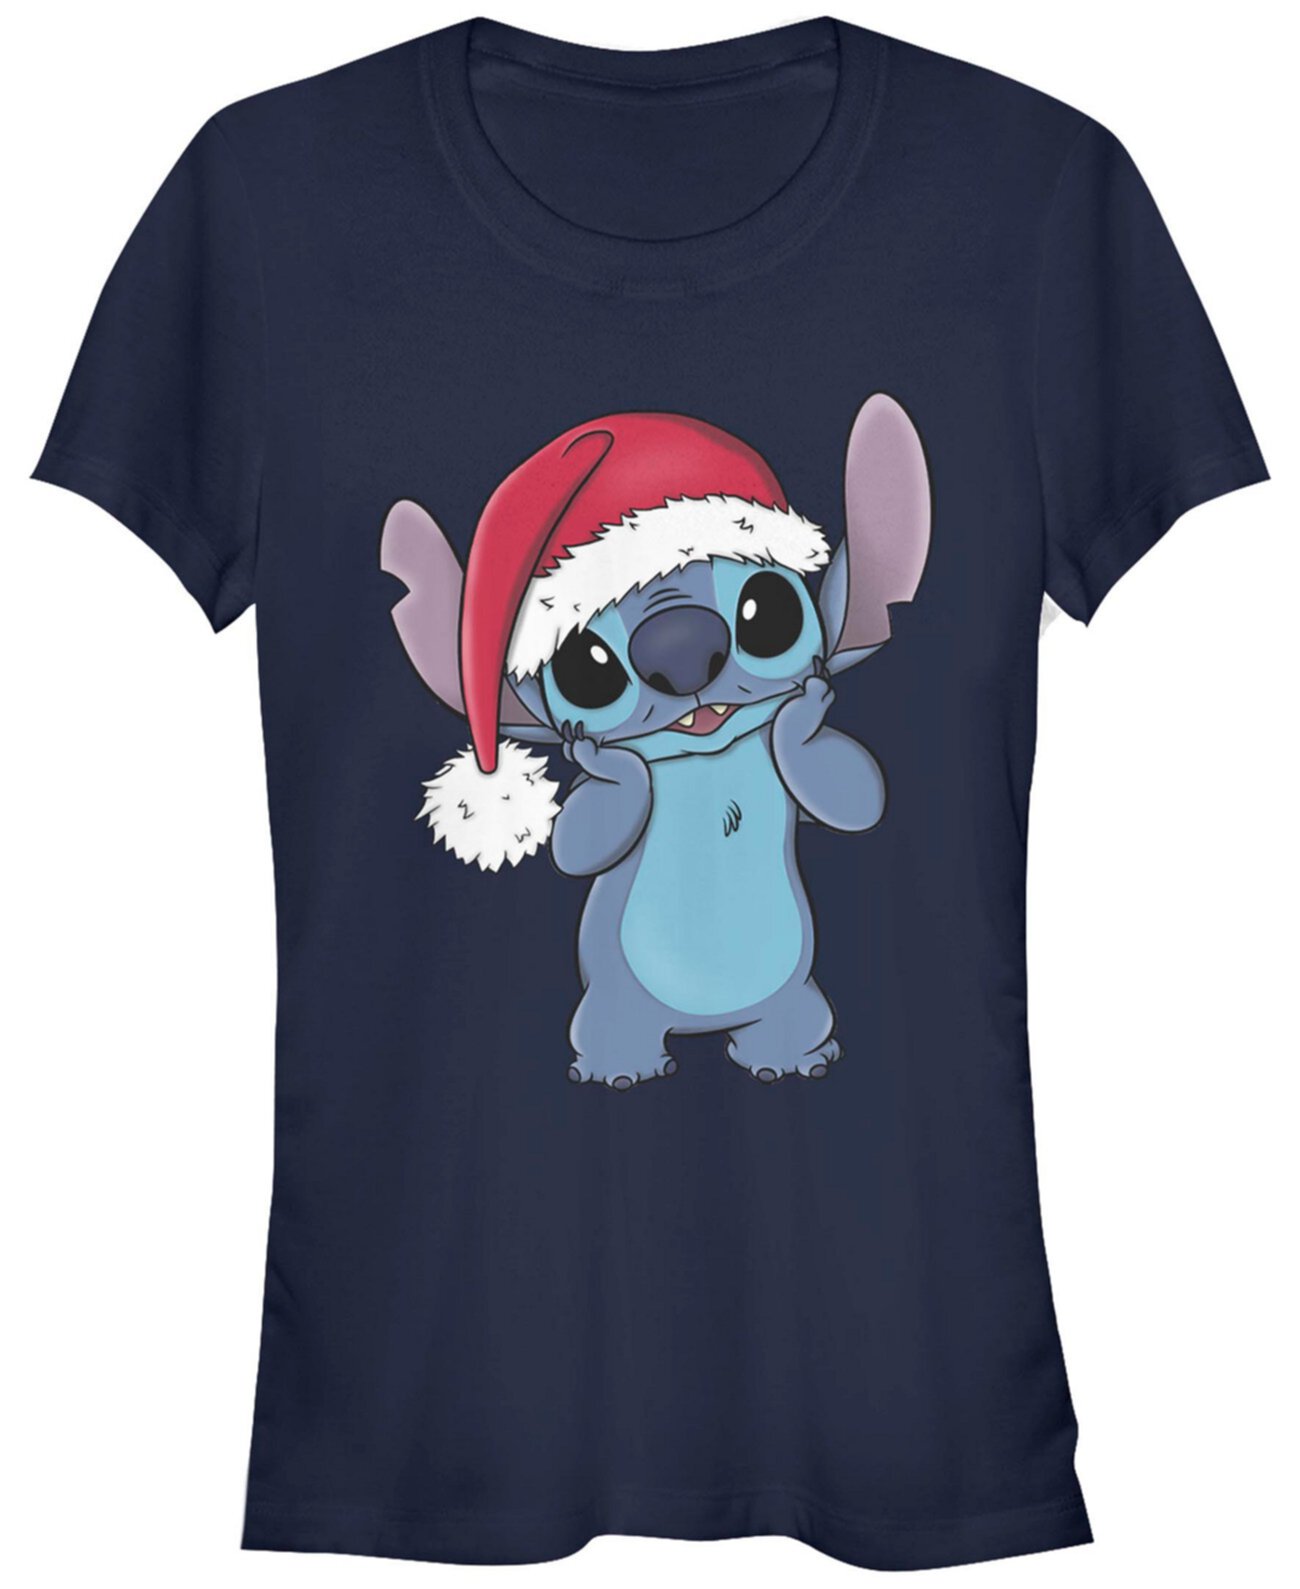 Женская футболка с короткими рукавами в стиле Disney Stitch в шапке Санта-Клауса FIFTH SUN